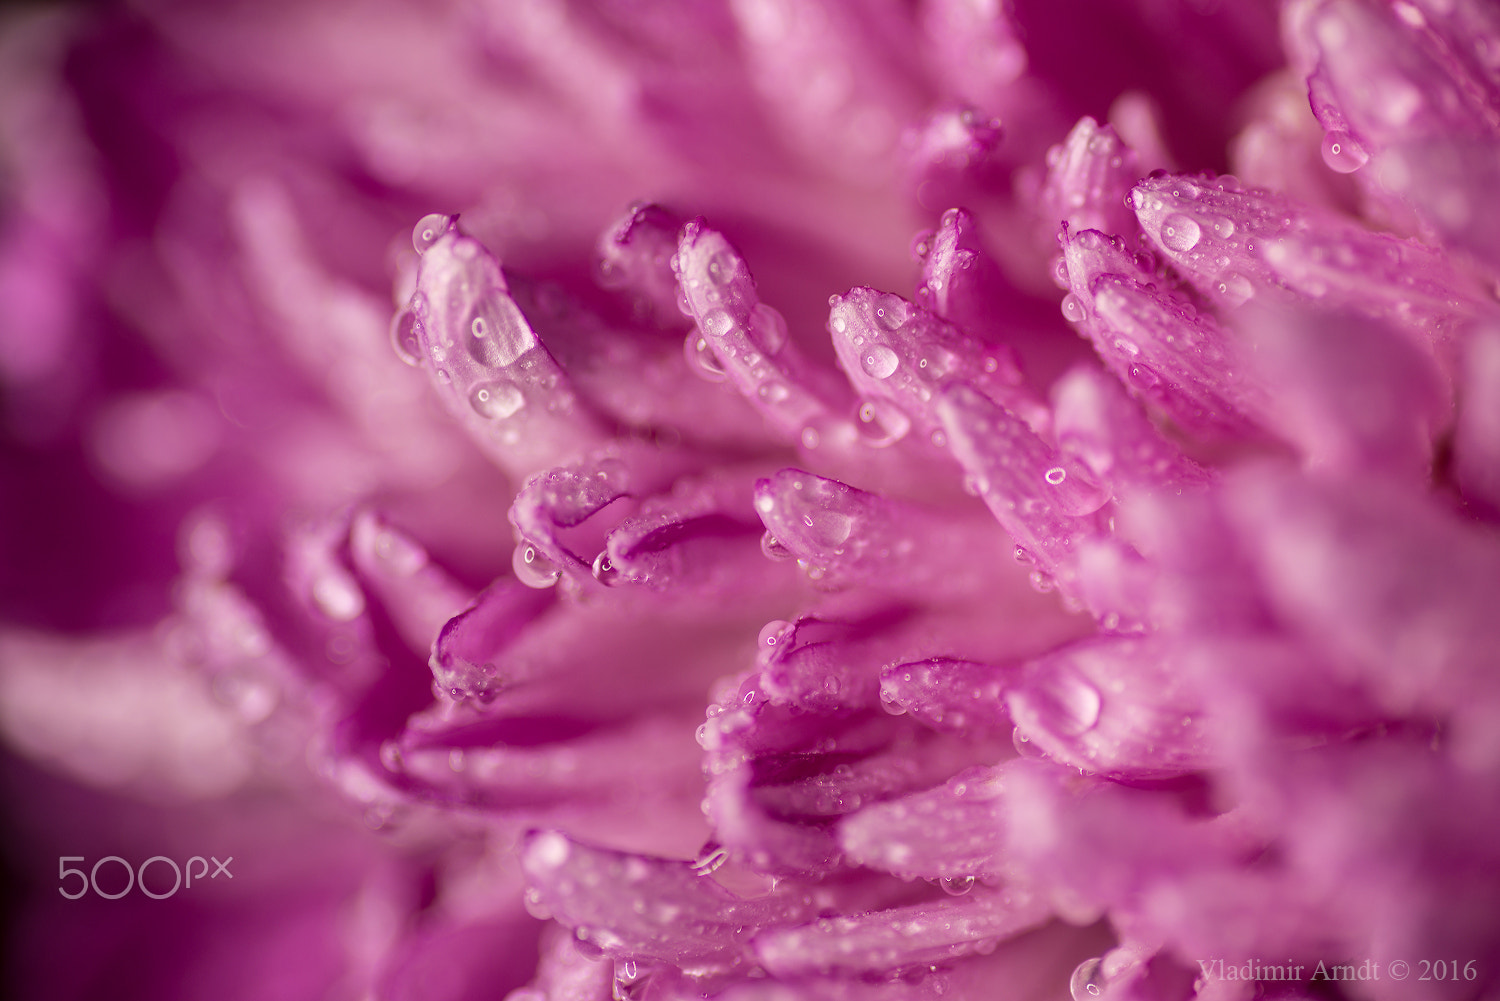 Nikon D800 sample photo. Water drop on pink petals. photography